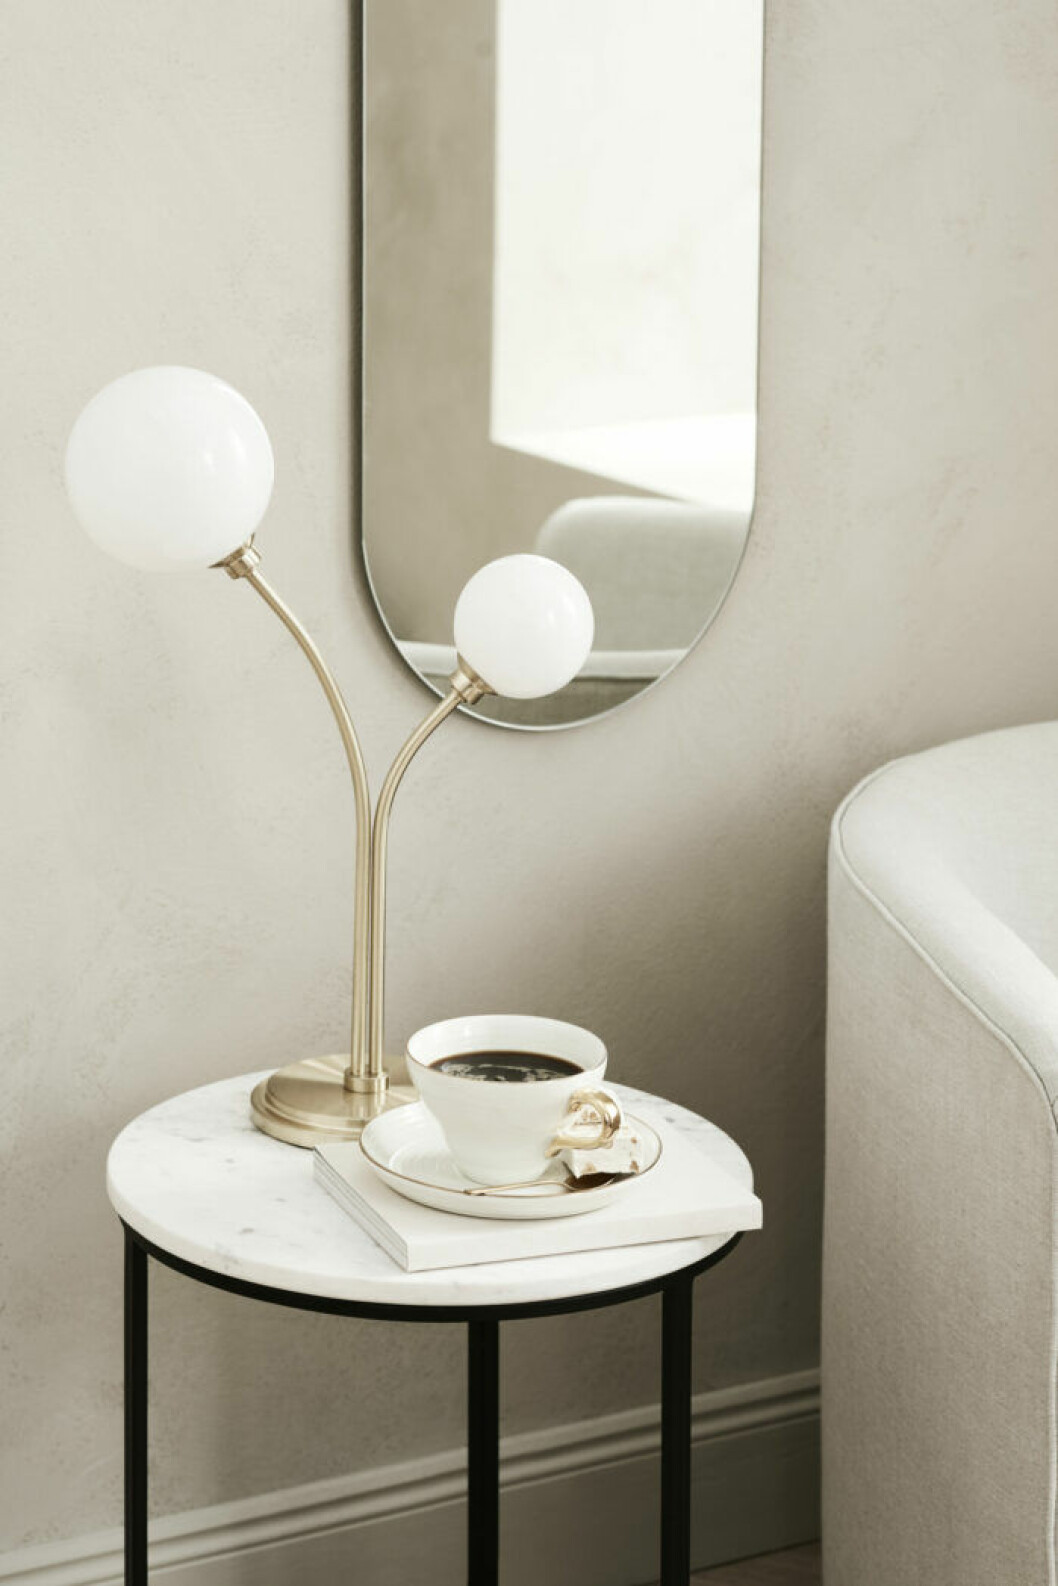 Lampa, sidobord och spegel från H&M Homes vårkollektion 2019